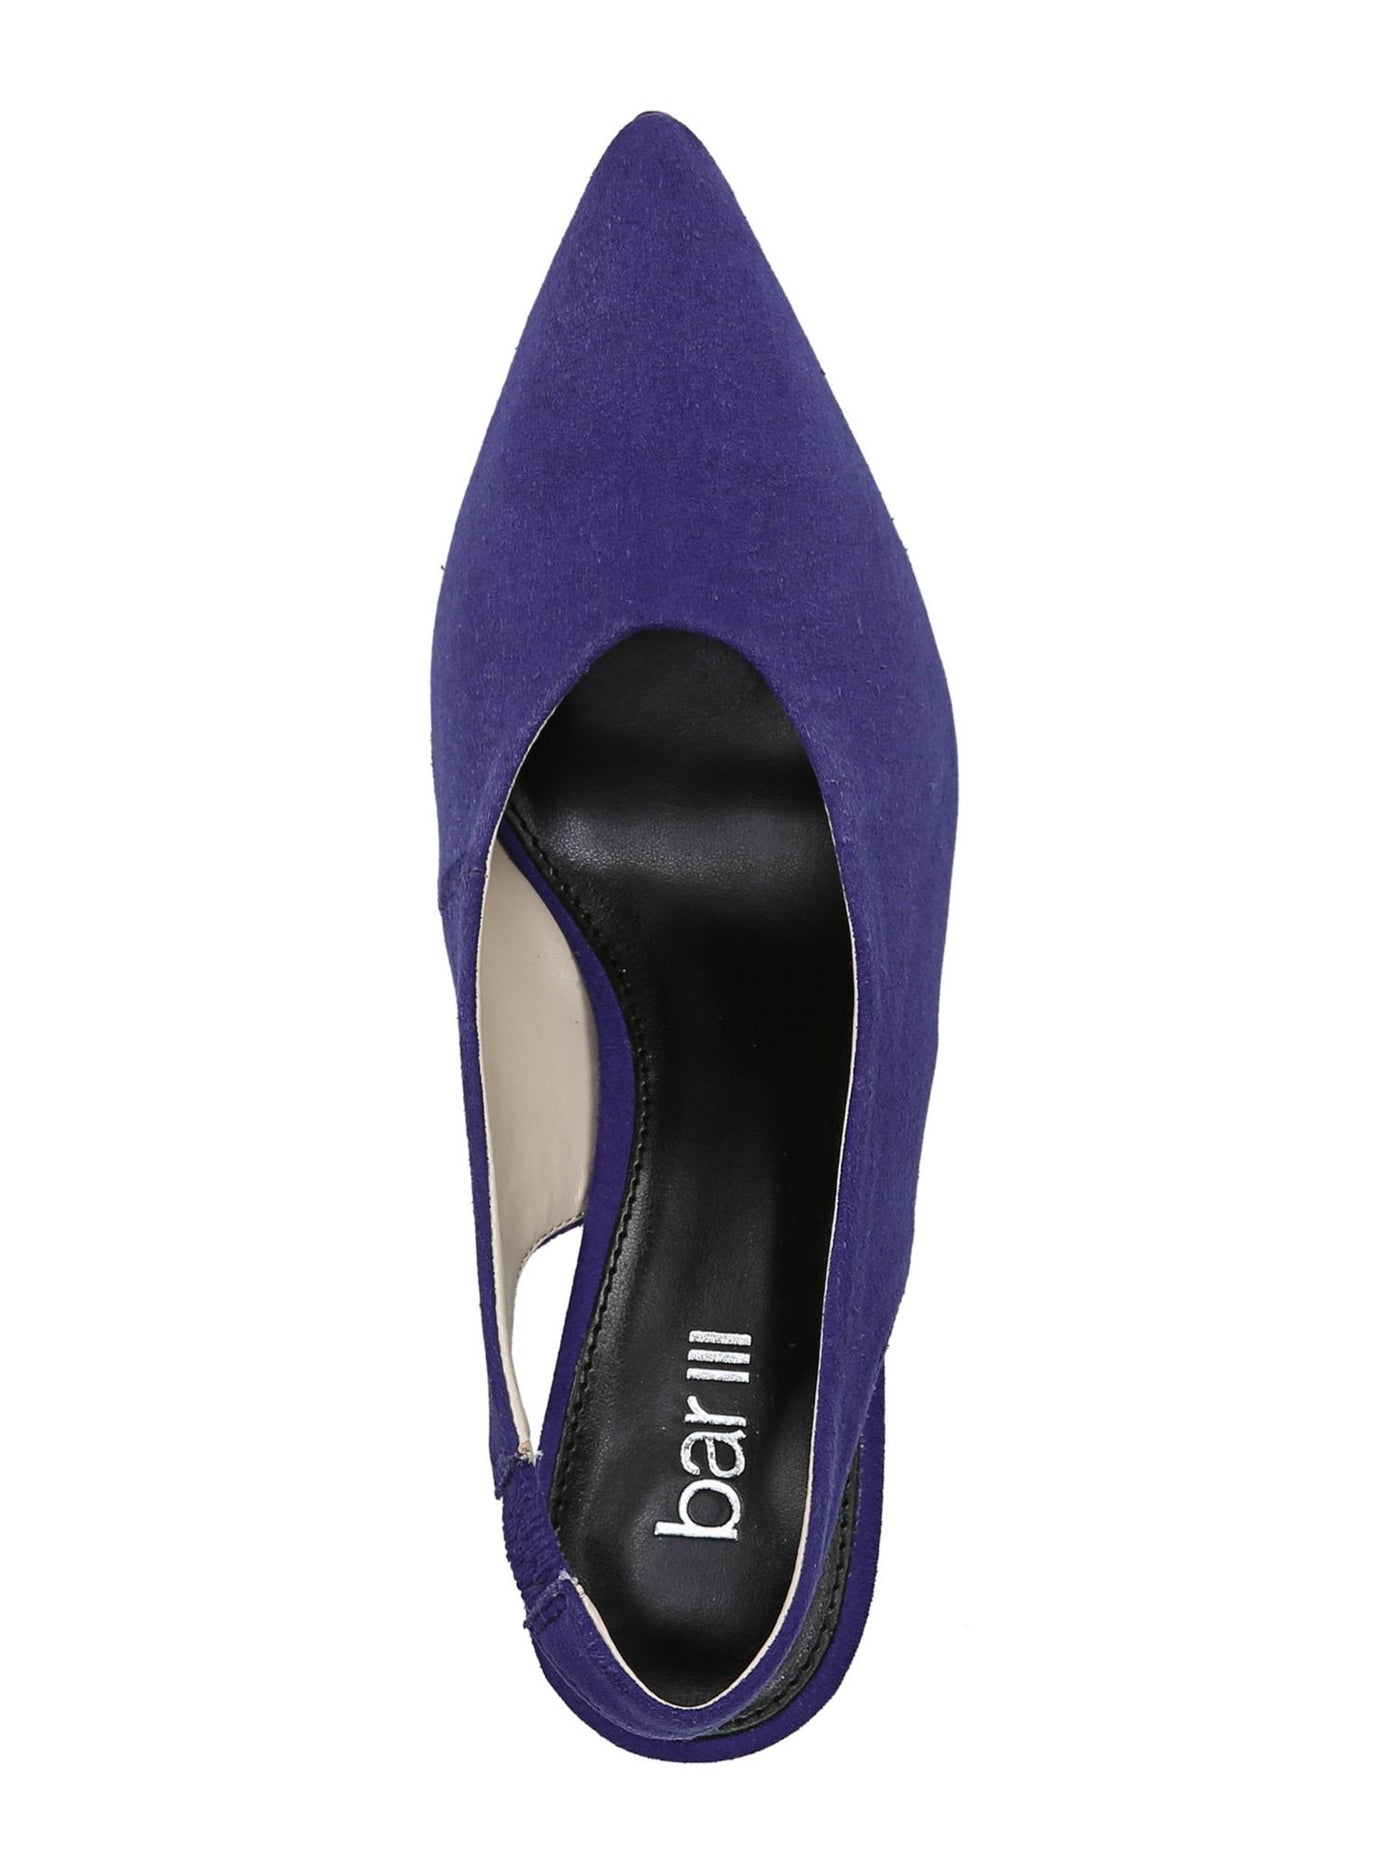 BAR III Womens Blue Goring At Back Strap Tanya Pointed Toe Kitten Heel Slip On Dress Slingback Sandal 7 M